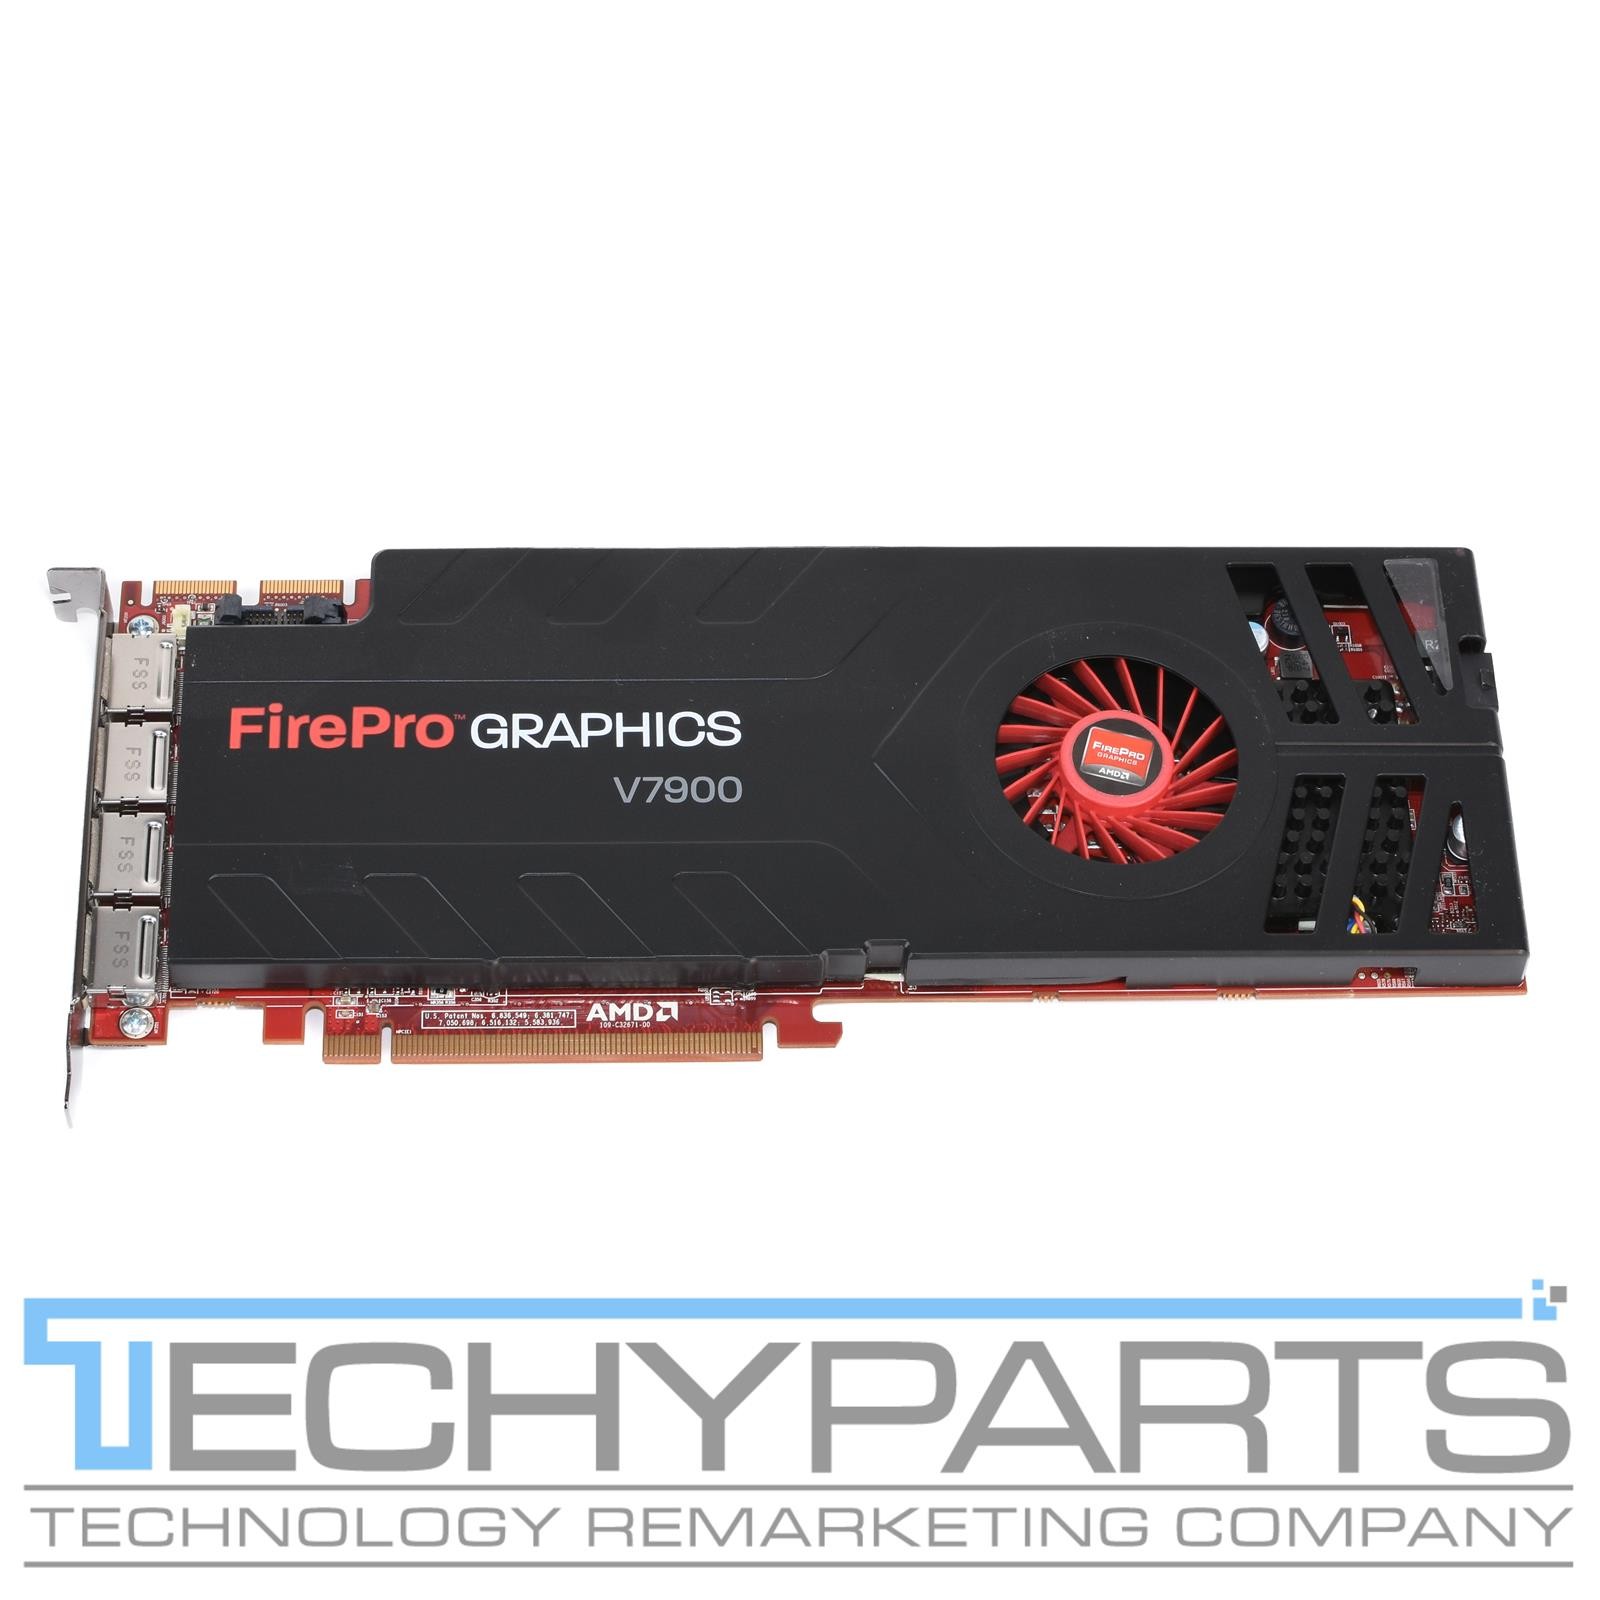 AMD FirePro V7900 2GB DDR5 4x DisplayPort PCI-Express Video Card